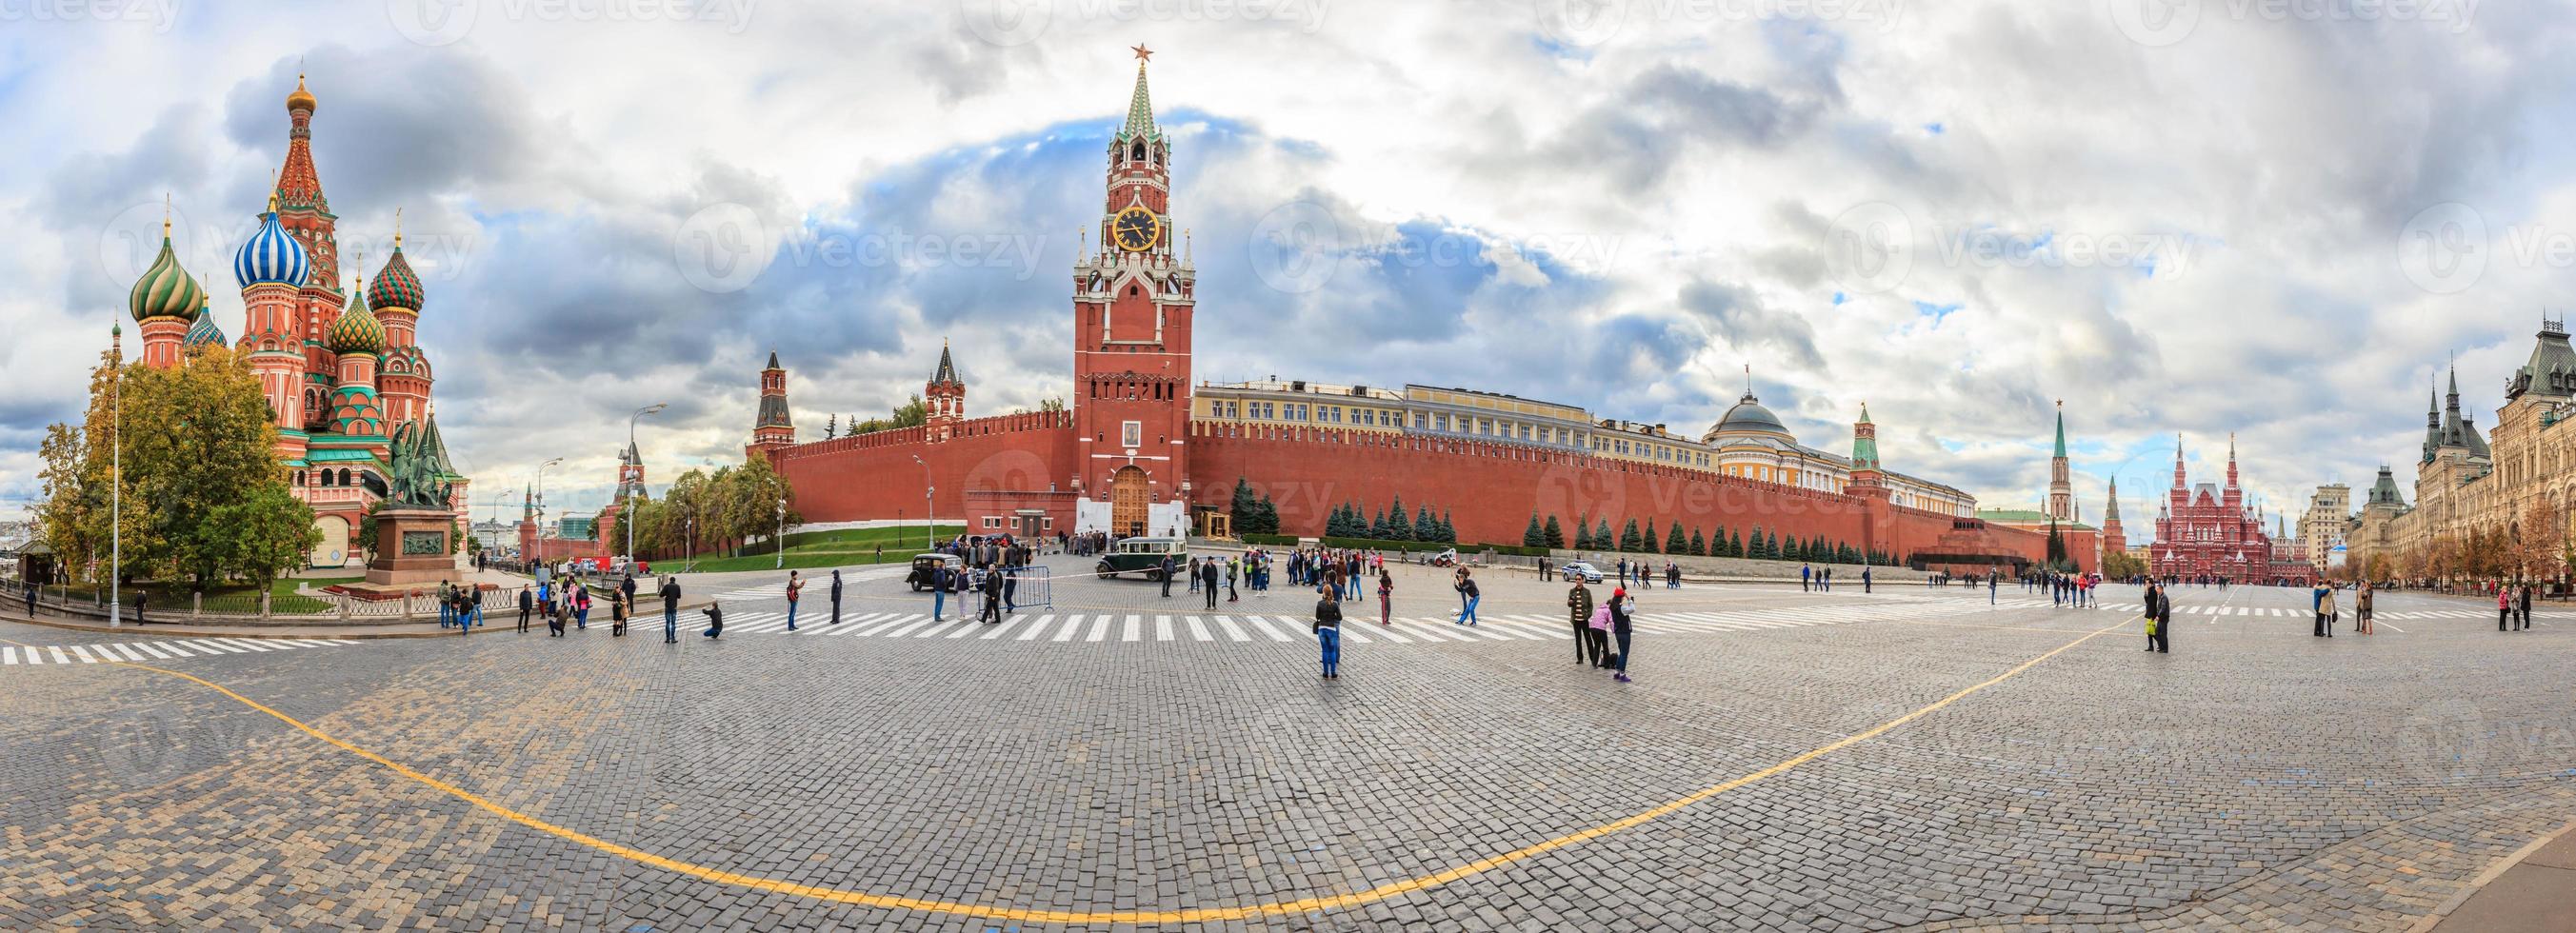 panorama av röd fyrkant i moskva under dagtid foto